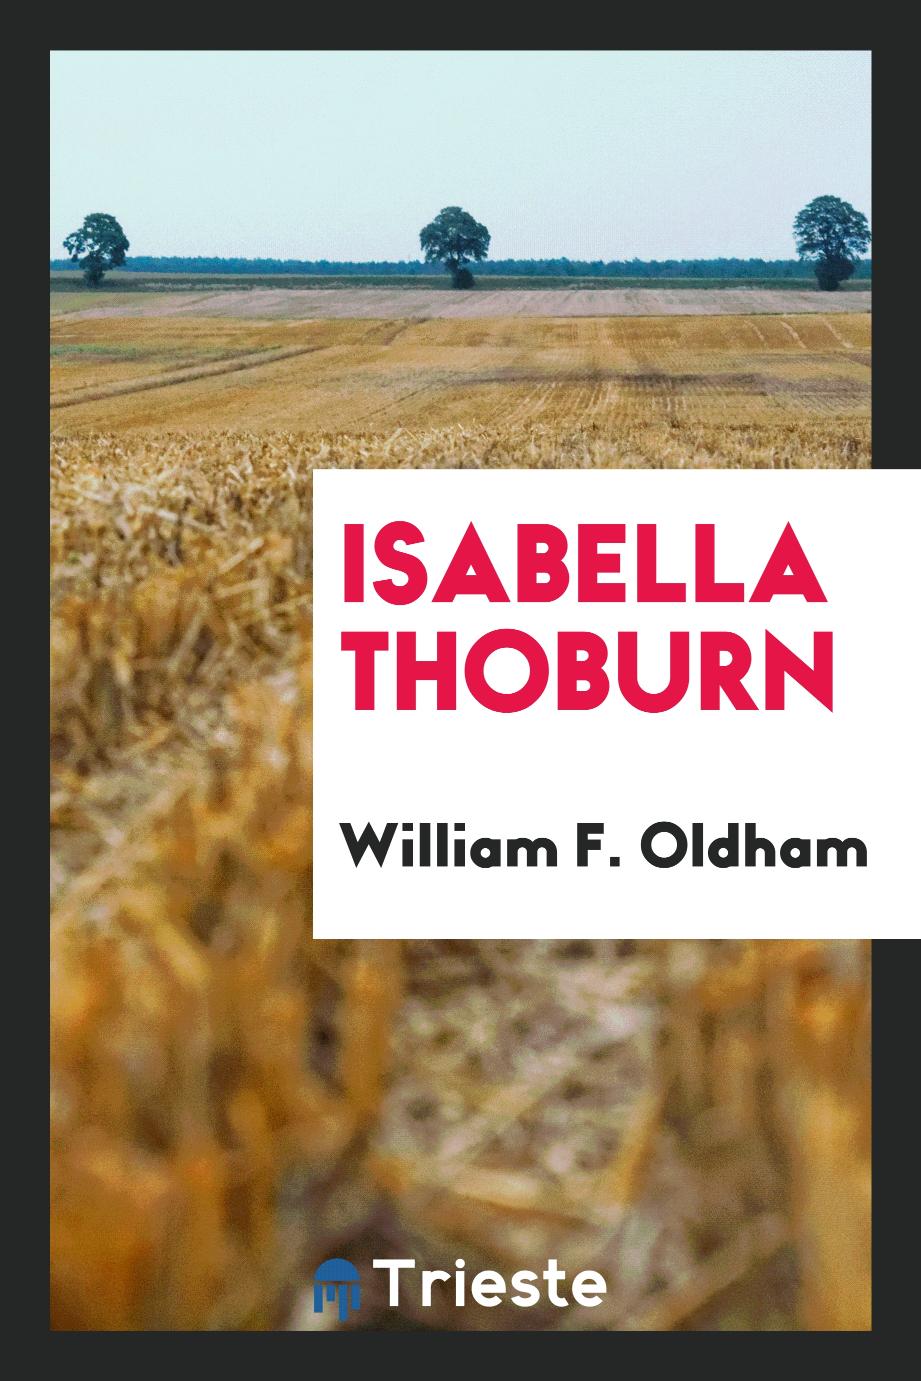 Isabella Thoburn